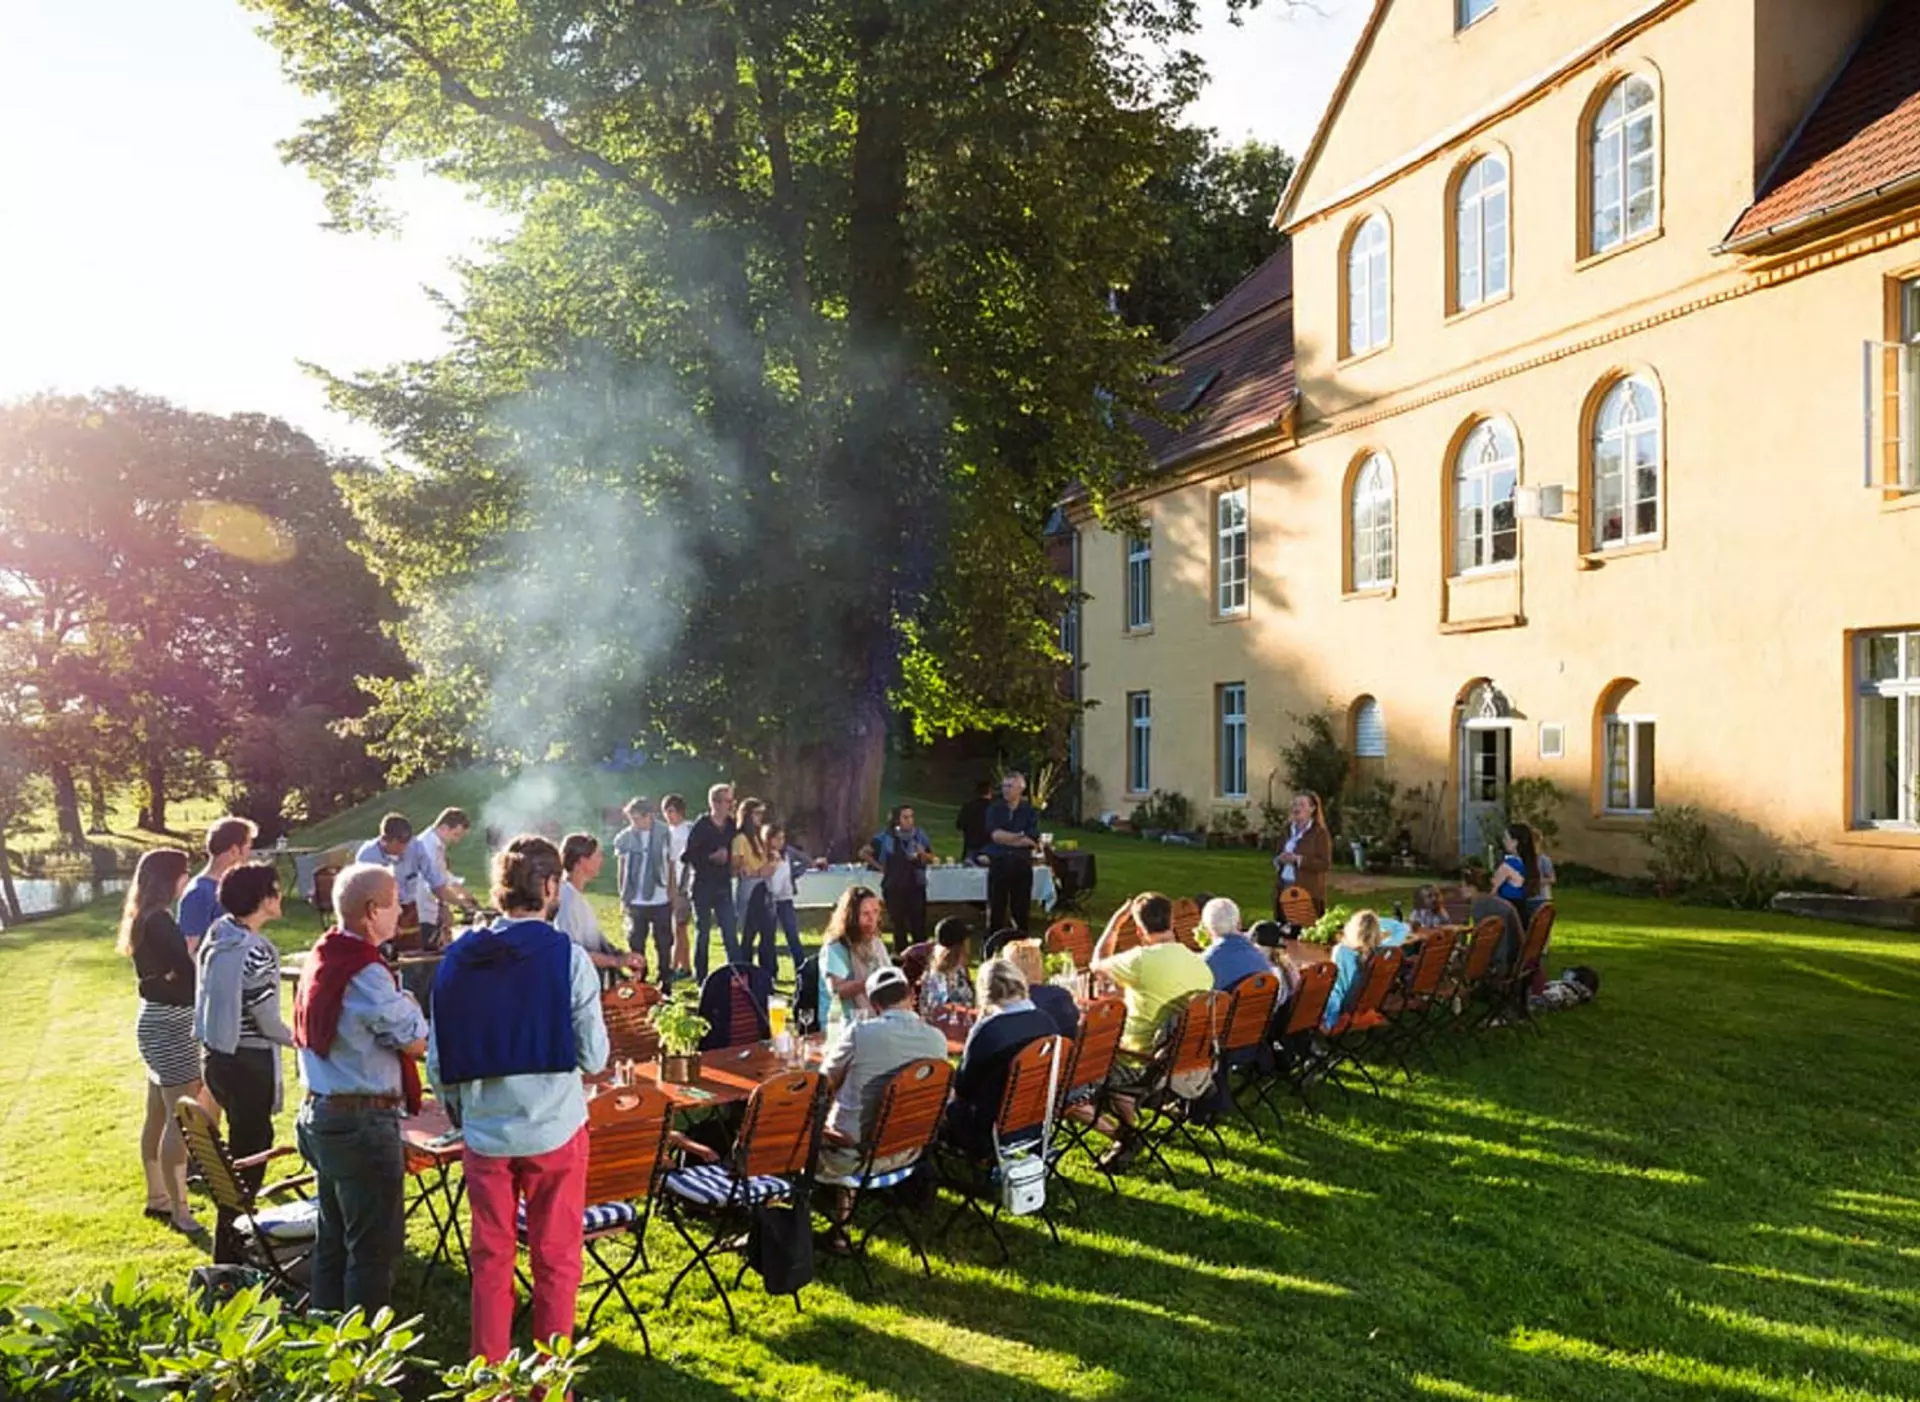 Feste feiern im Garten von Schloss Lühburg in Mecklenburg-Vorpommern